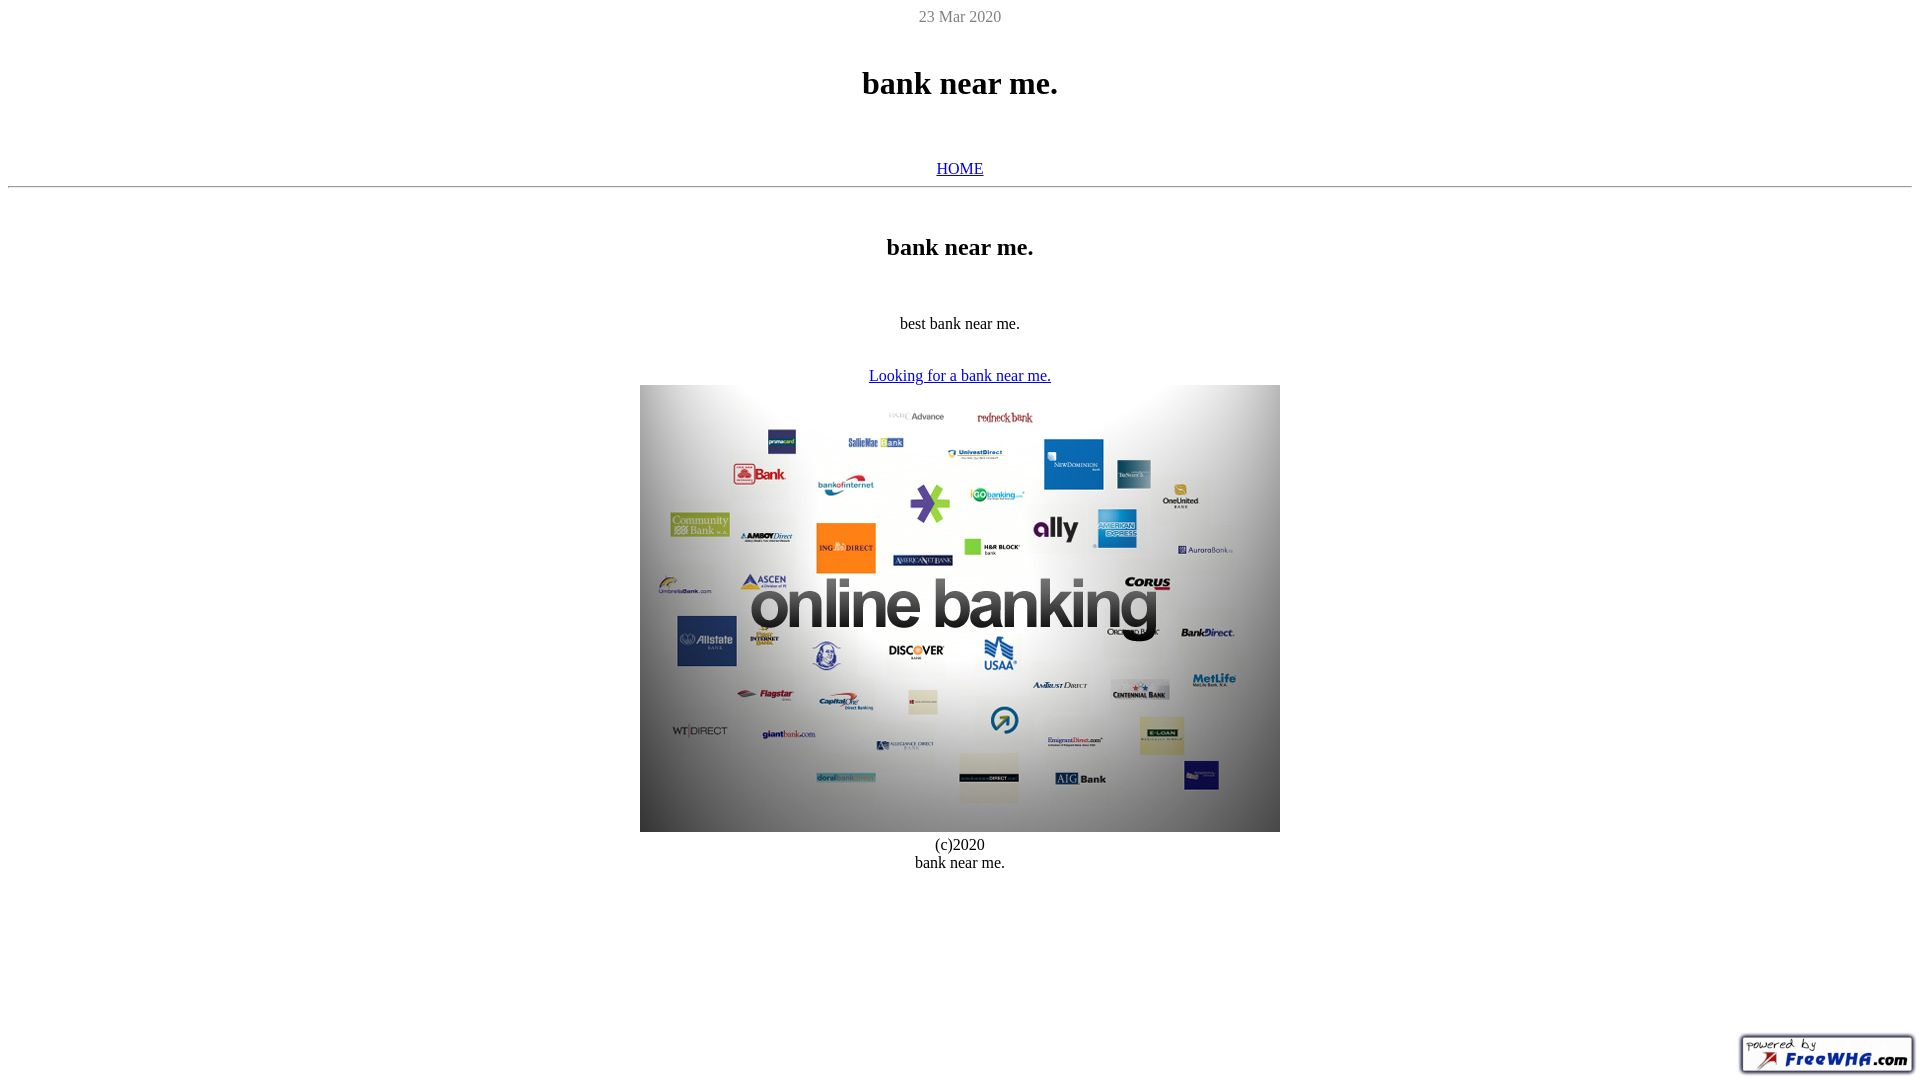 État du site web banknearme.ueuo.com est   EN LIGNE